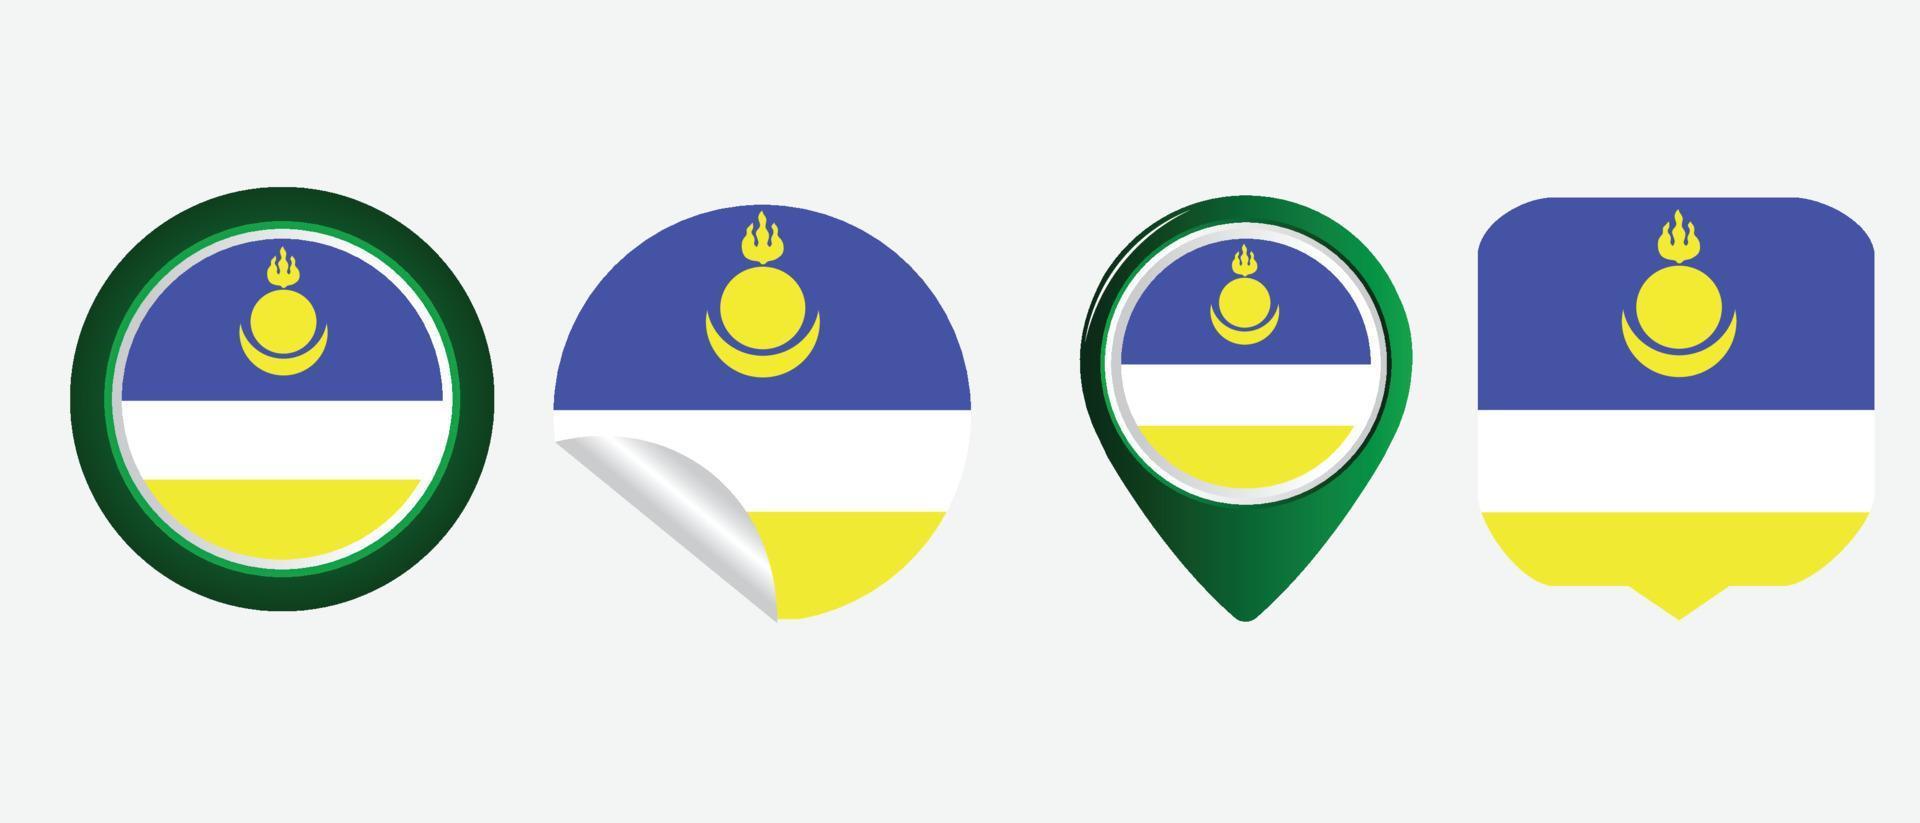 Buryatia flag. flat icon symbol vector illustration